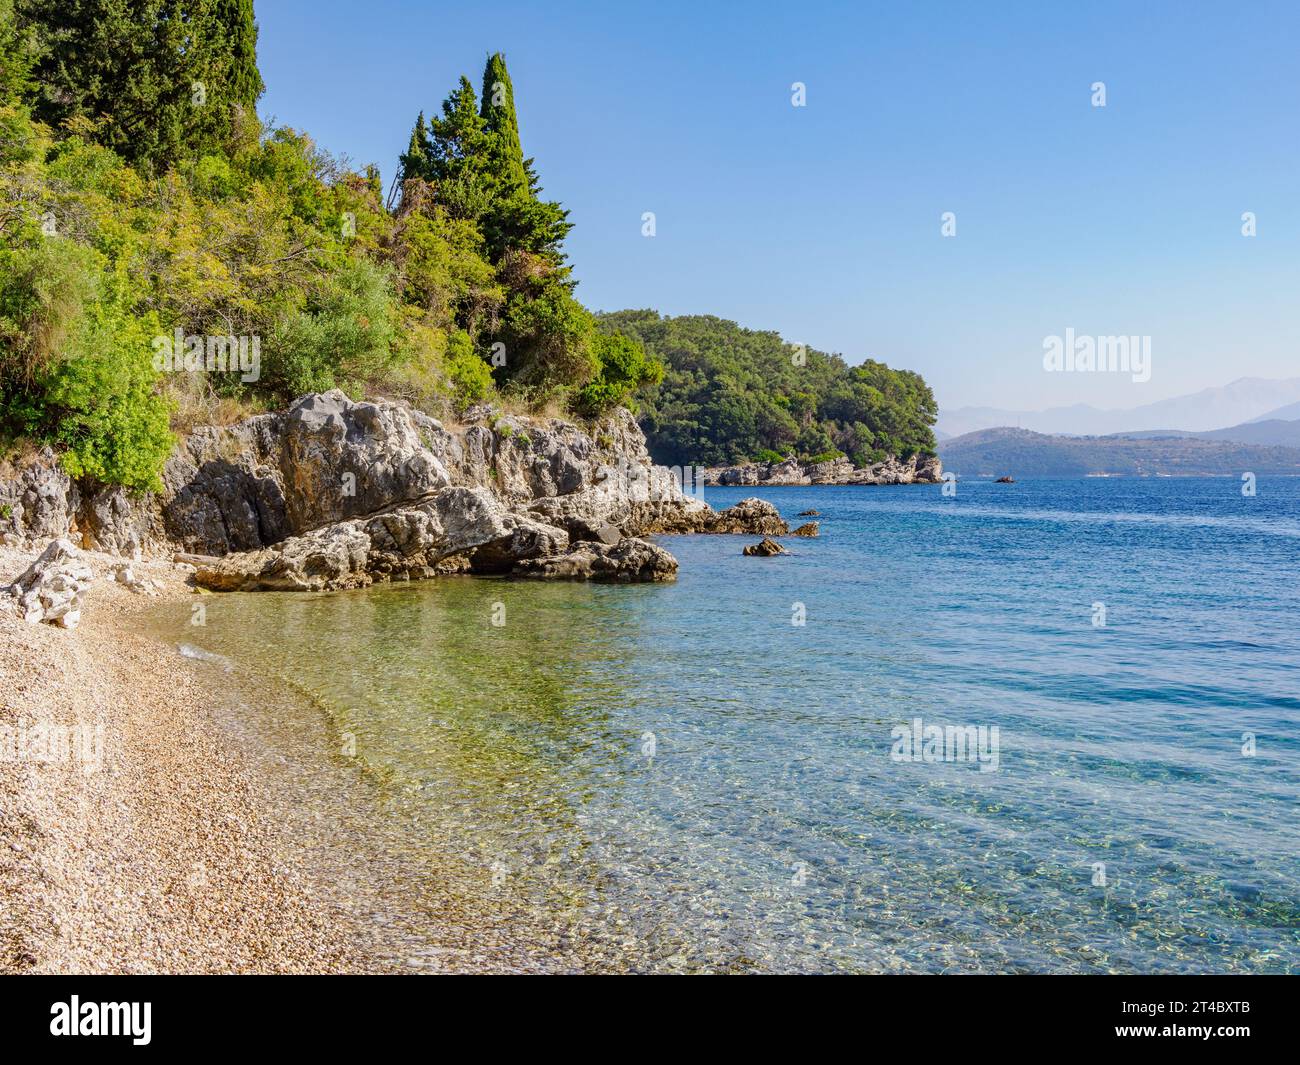 Angolo tranquillo della spiaggia di Agni sulla costa nord orientale di Corfù, nelle Isole Ionie della Grecia Foto Stock